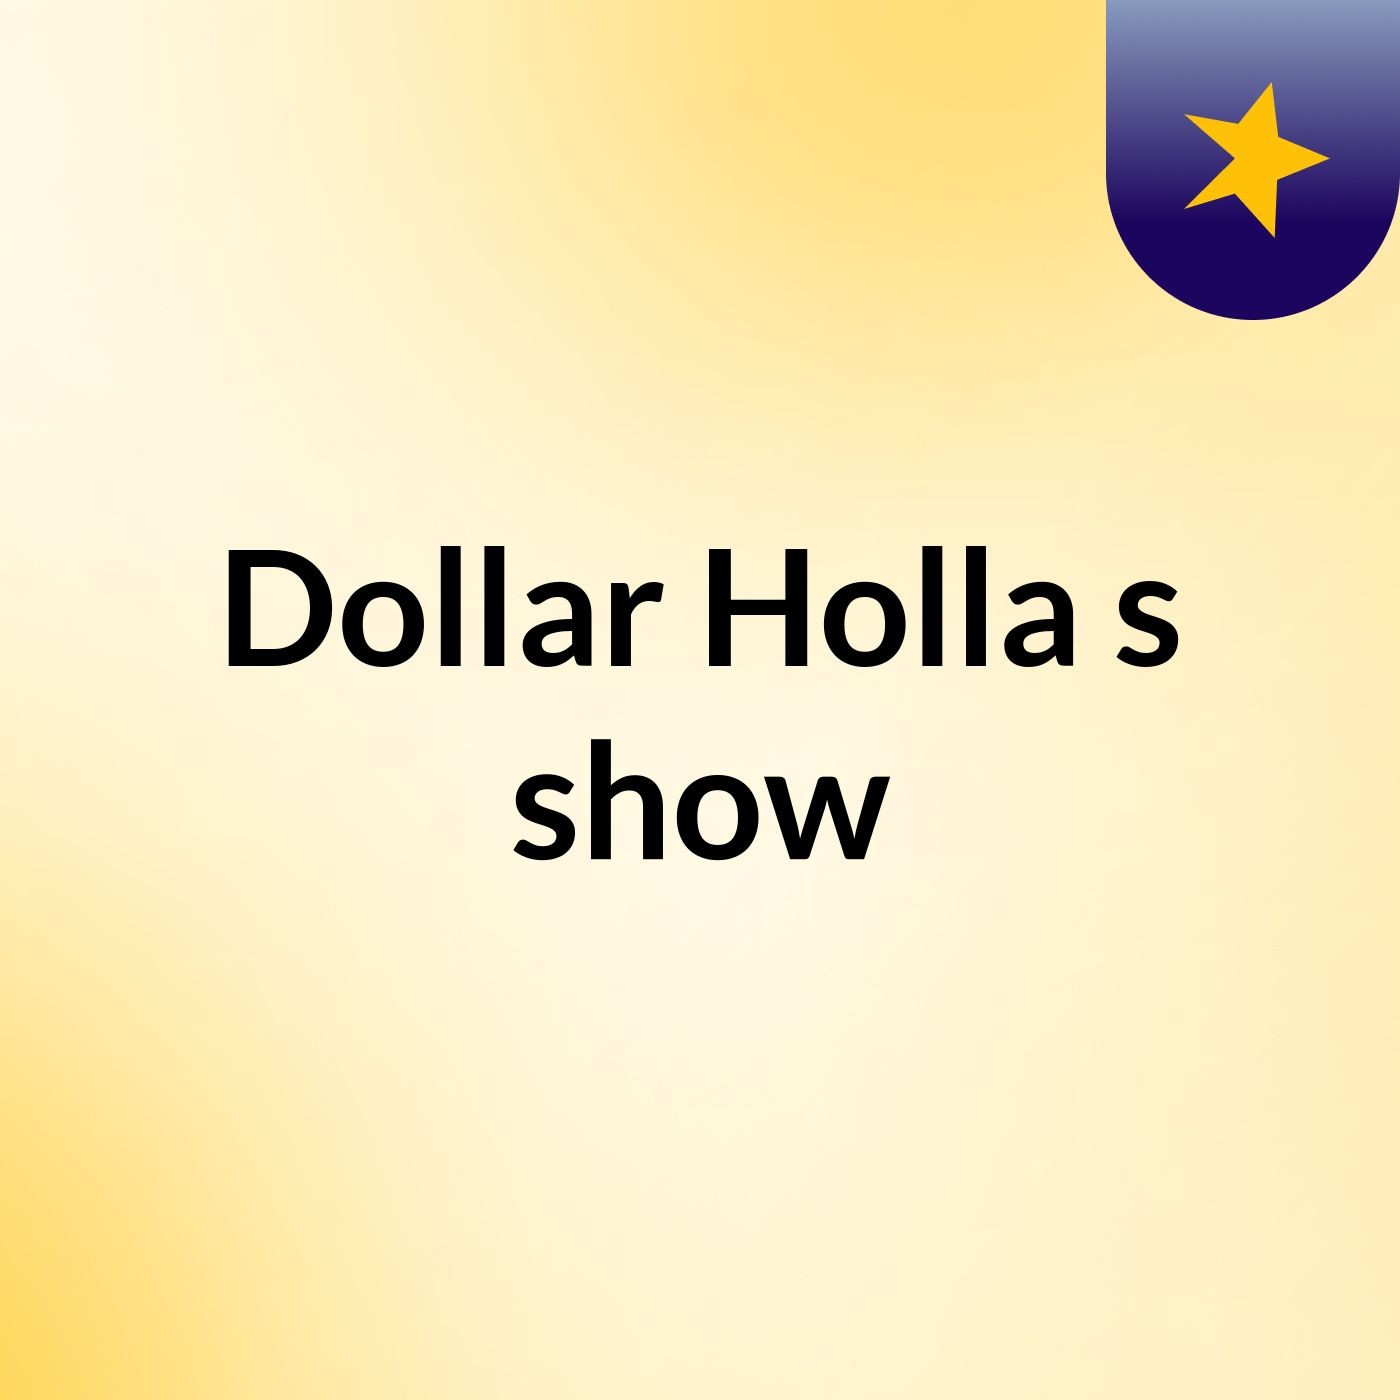 Dollar Holla's show